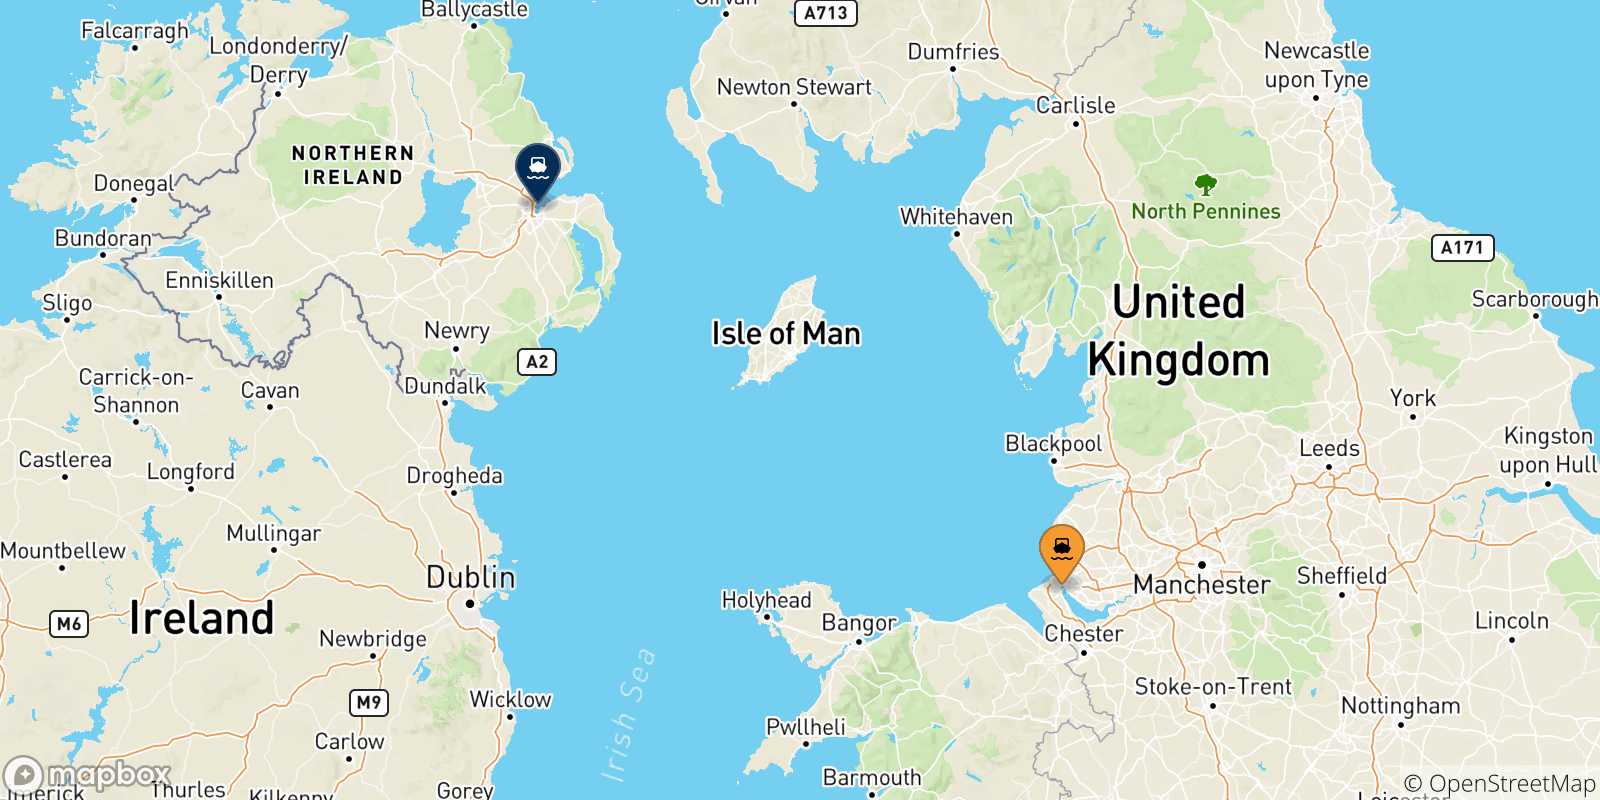 Mappa delle possibili rotte tra Liverpool Birkenhead e il Regno Unito